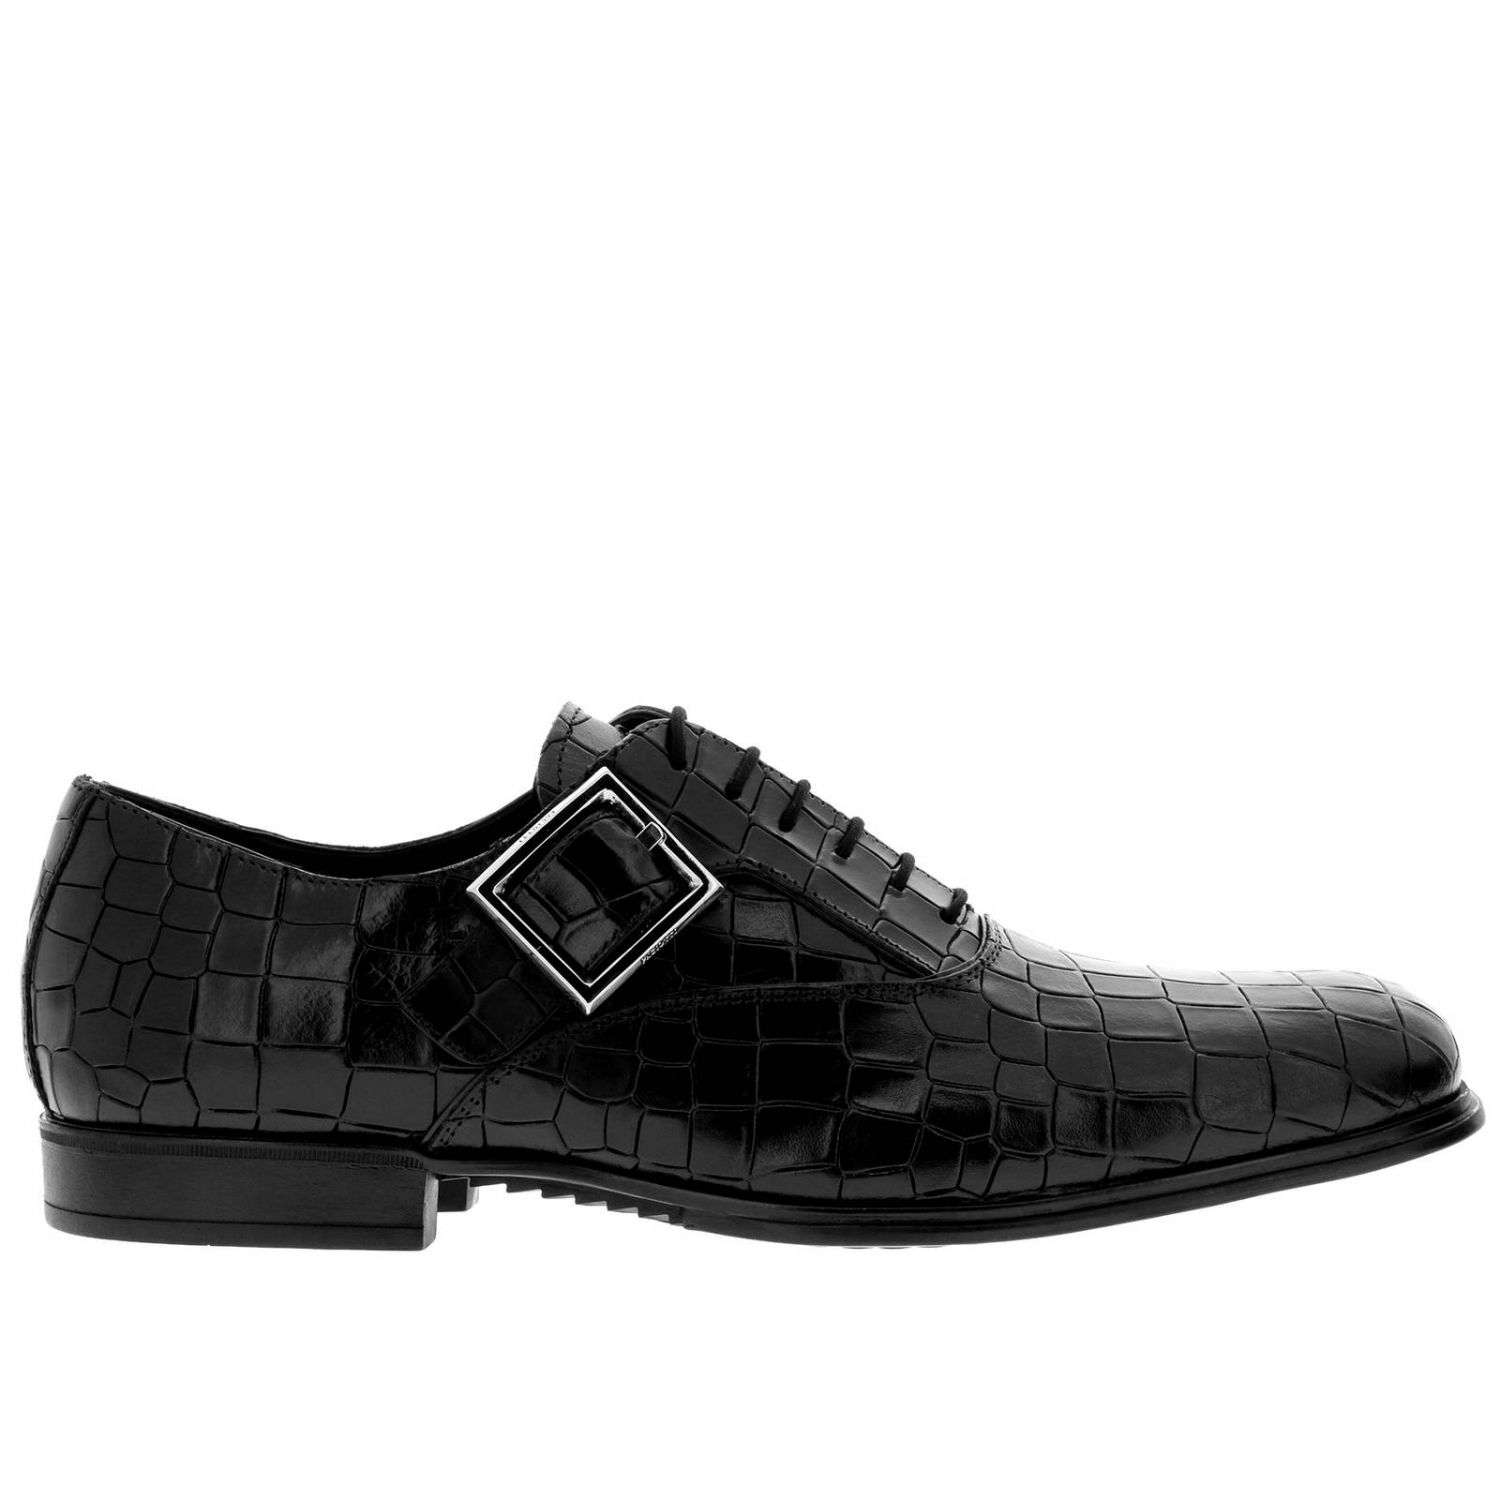 Paciotti Outlet: Shoes men | Brogue Shoes Paciotti Men Black | Brogue ...